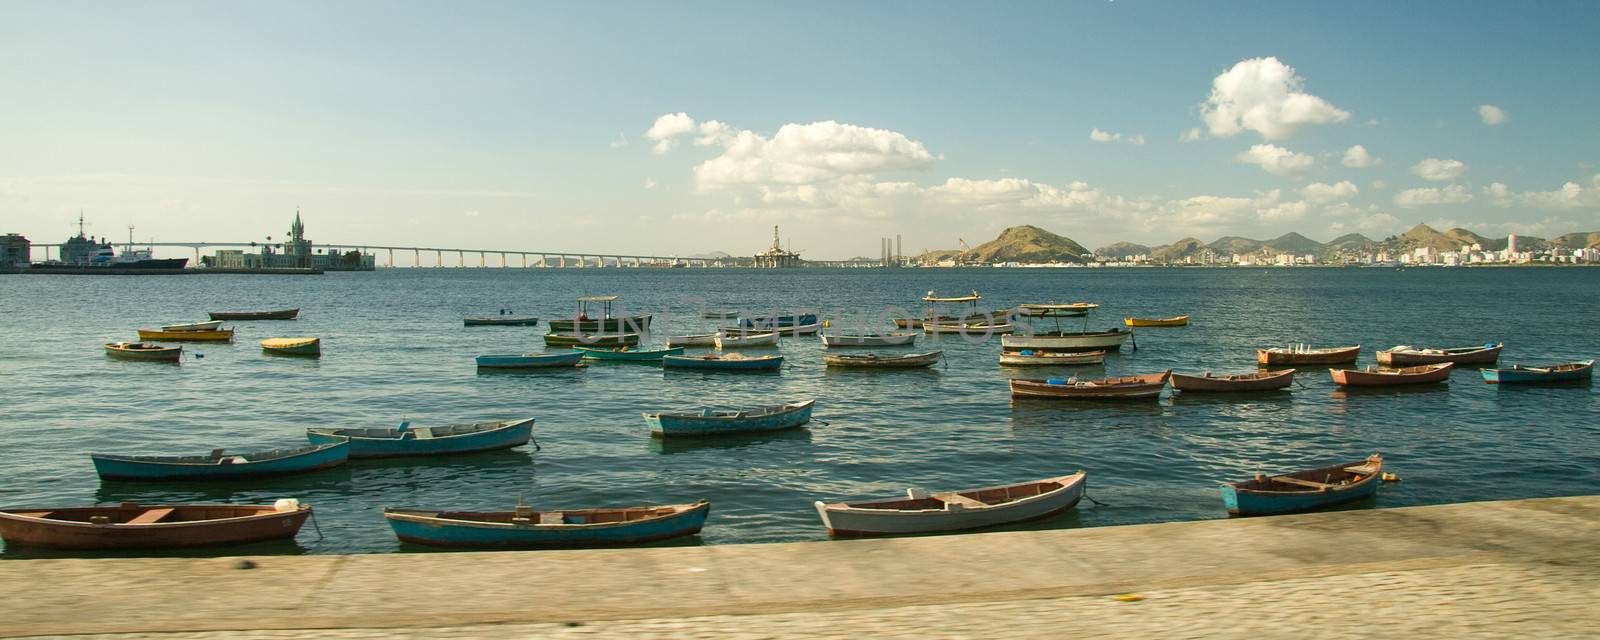 Fishing boats in Rio de Janeiro by CelsoDiniz